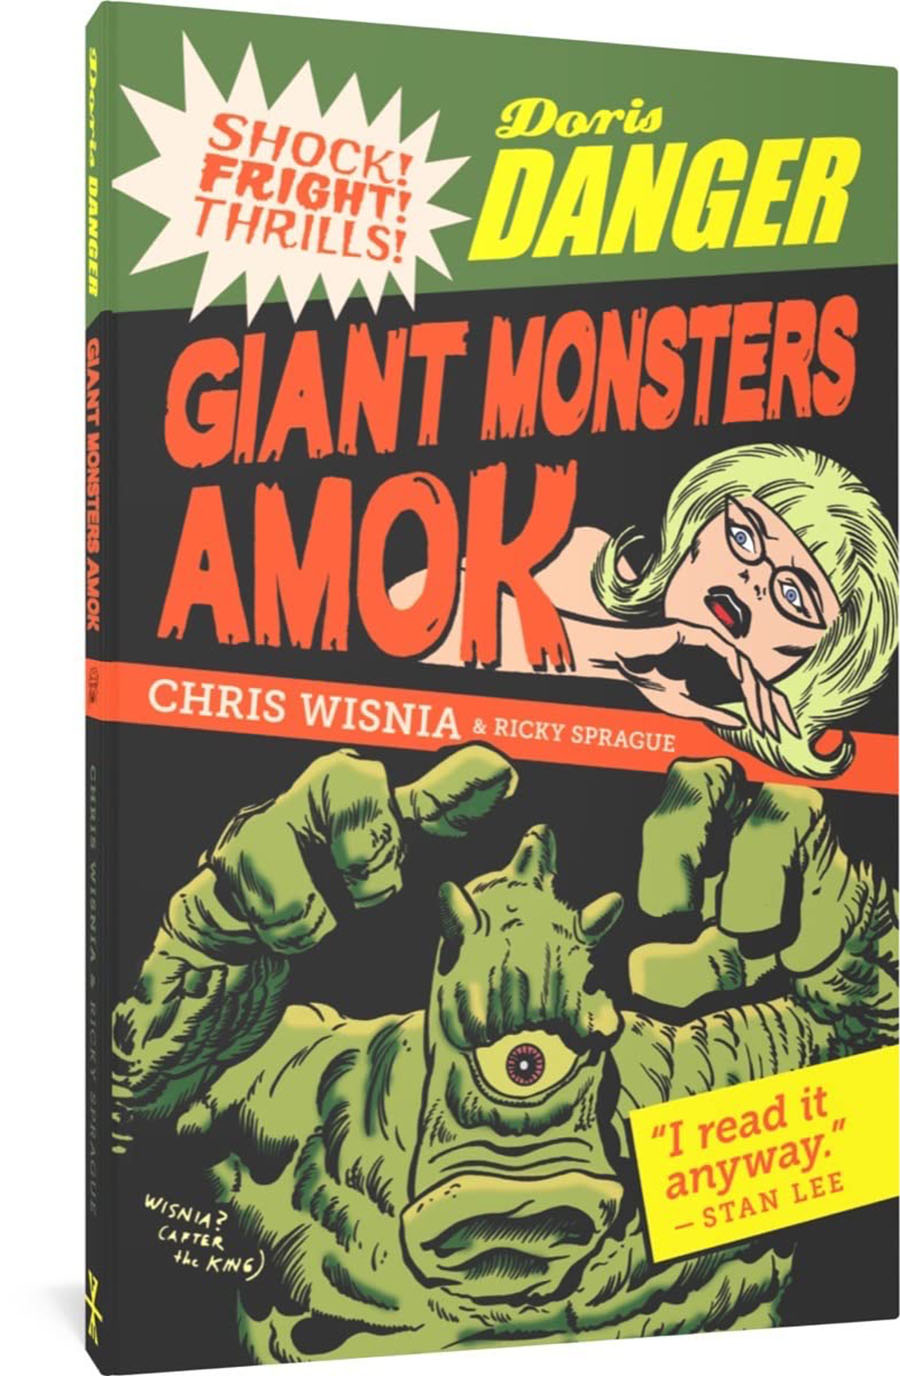 Doris Danger Giant Monsters Amok TP